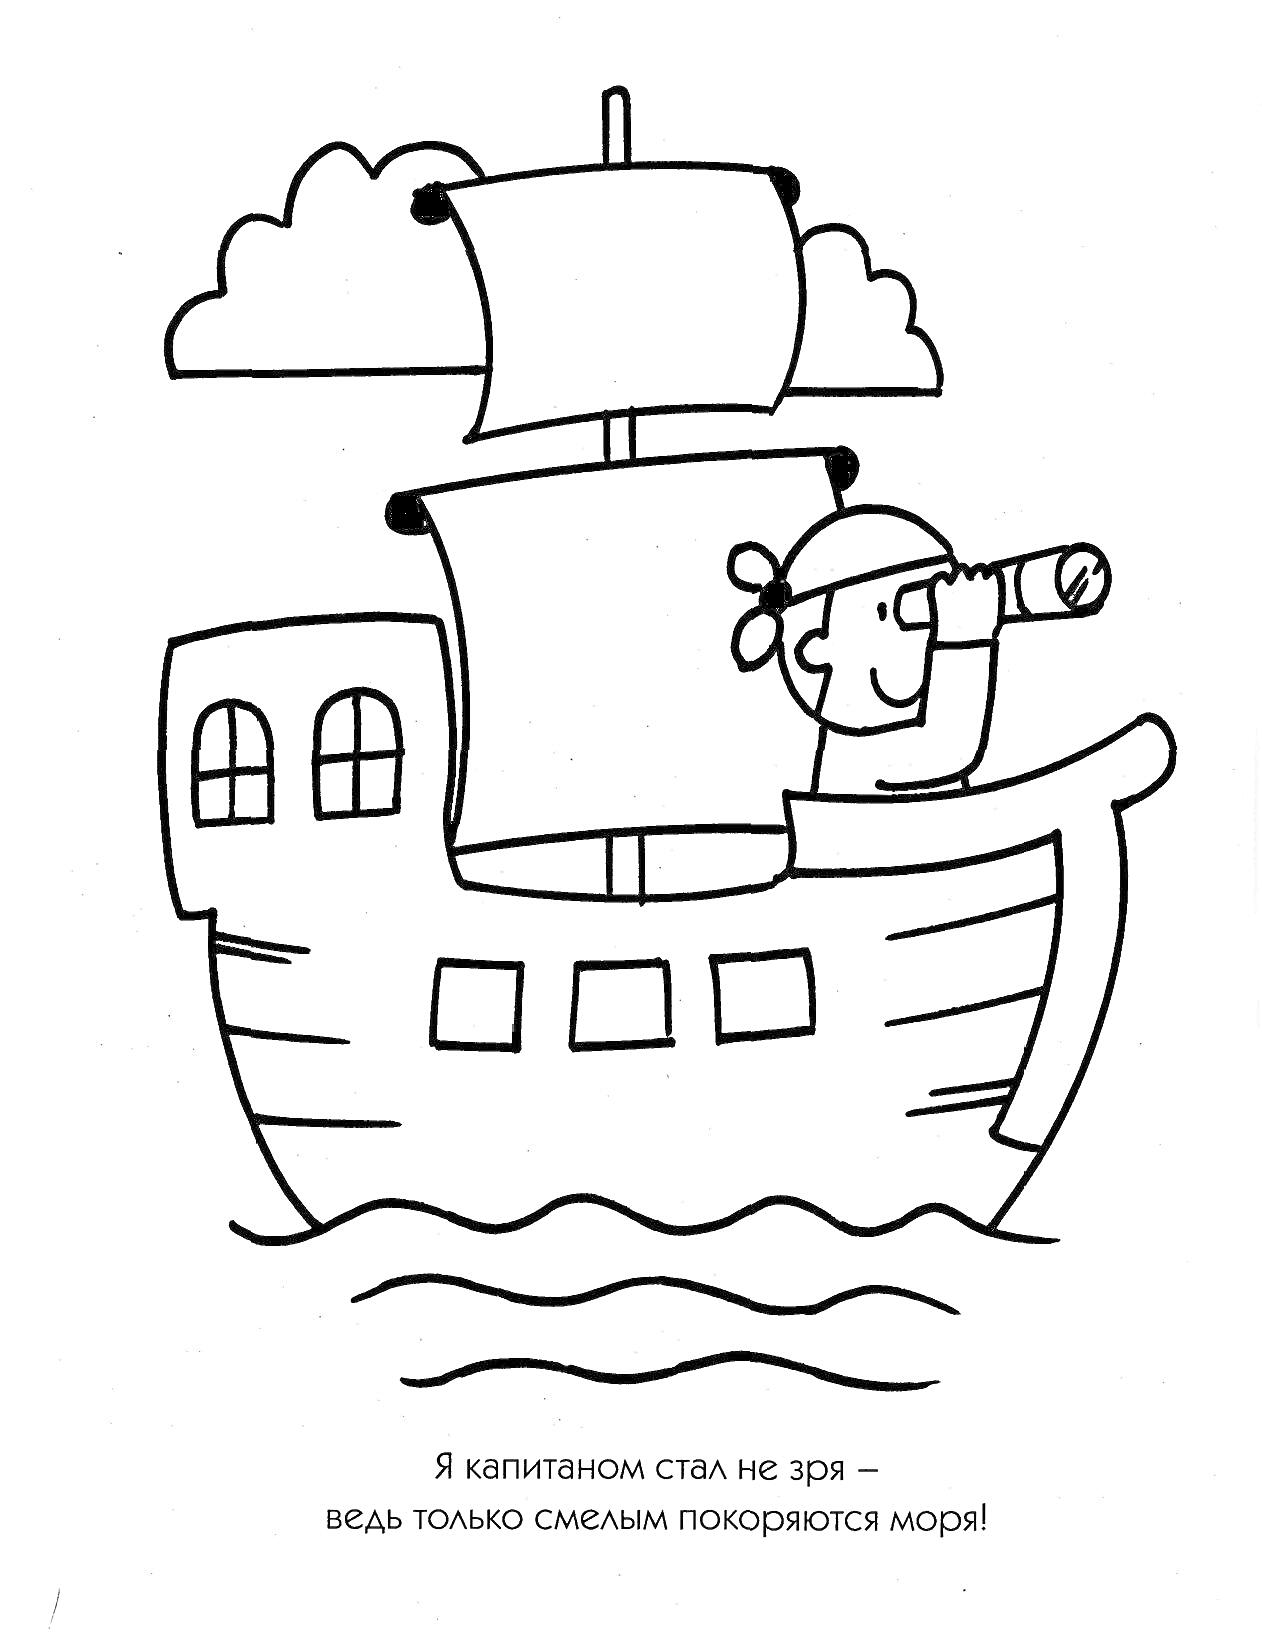 Корабль с капитаном, смотрящим в подзорную трубу, облаками и мотивирующей фразой